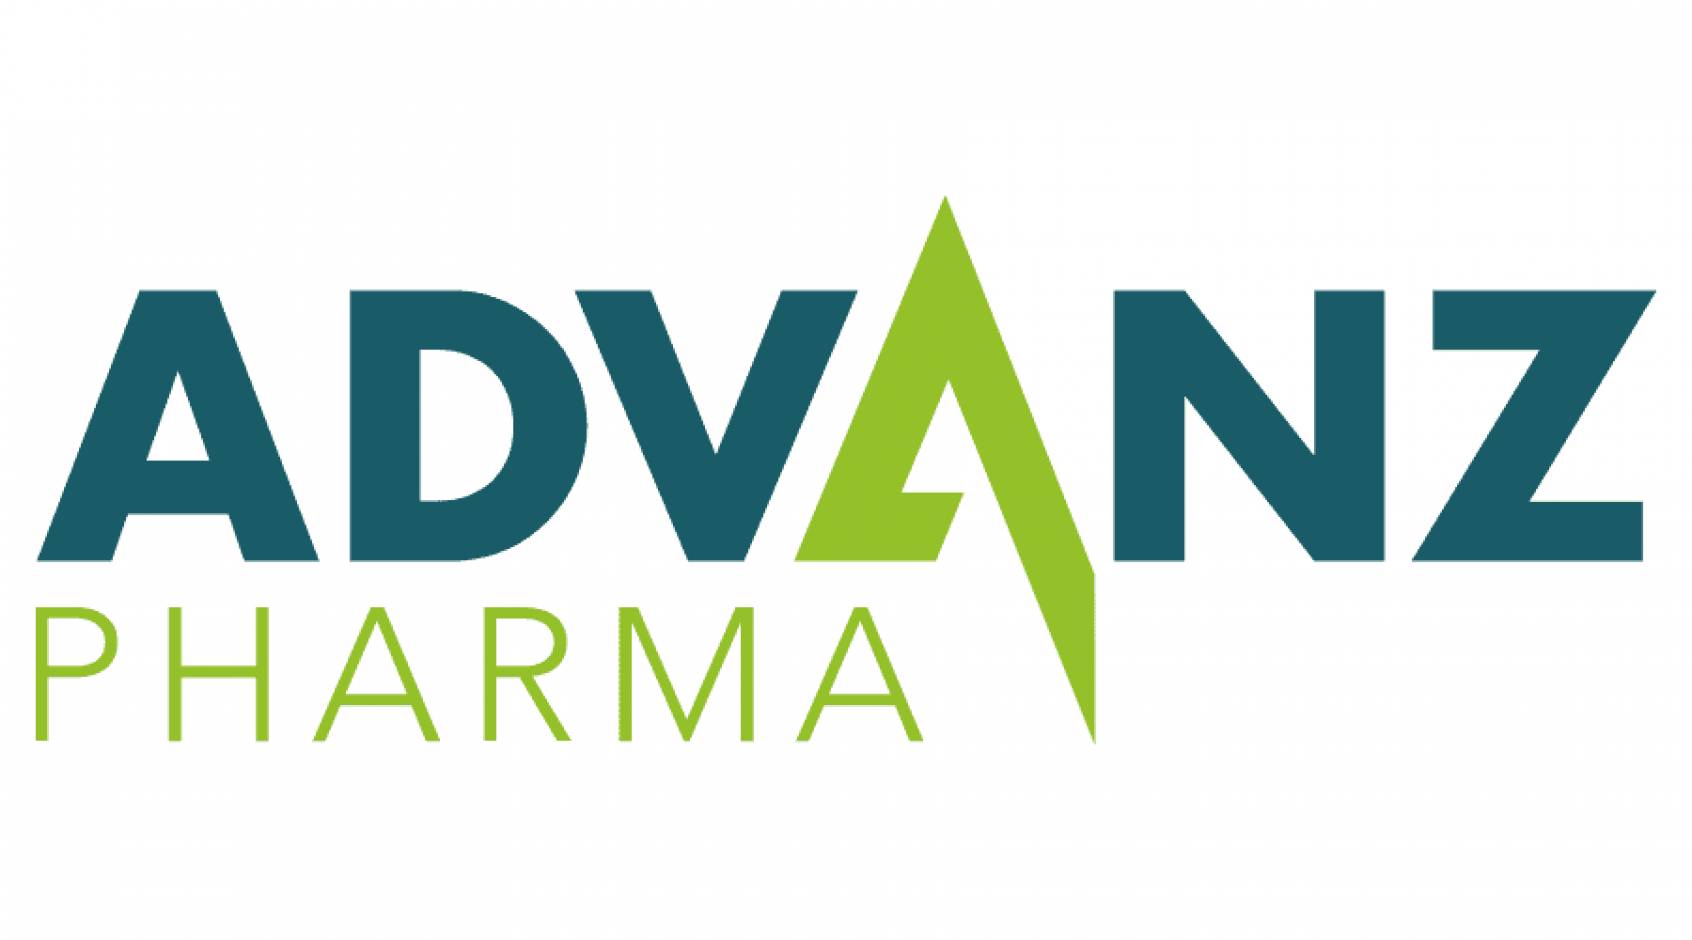 Apre a Milano la filiale italiana di Advanz Pharma